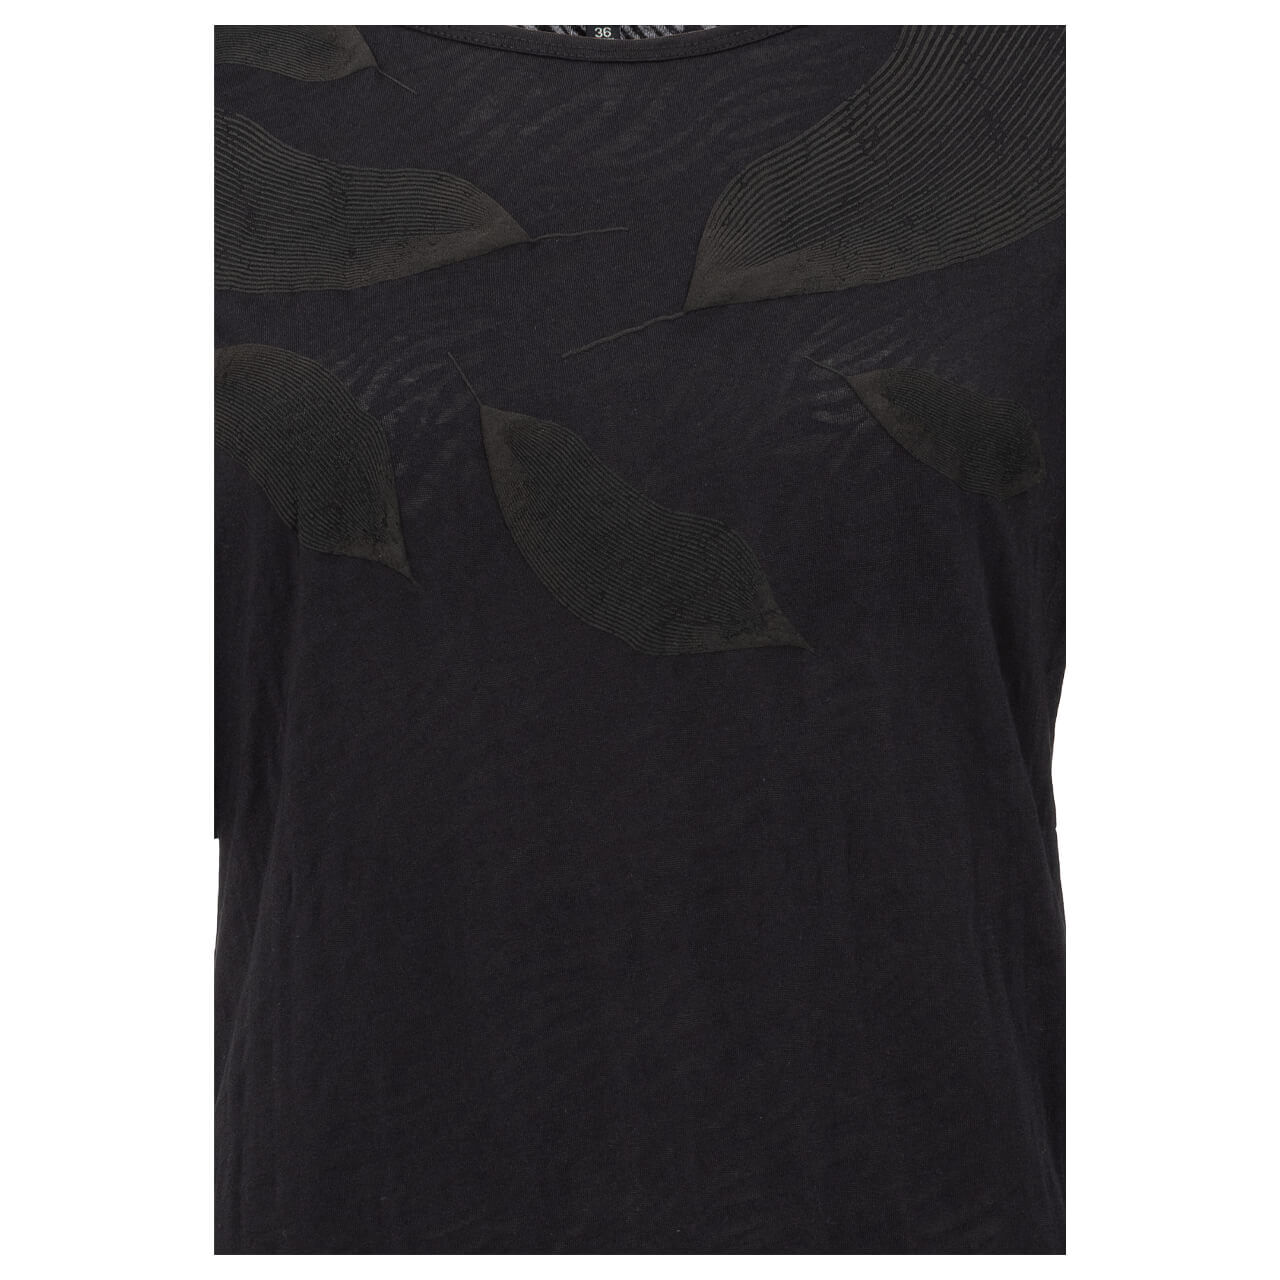 Soquesto T-Shirt für Damen in Dunkelgrau mit Print, FarbNr.: 2860